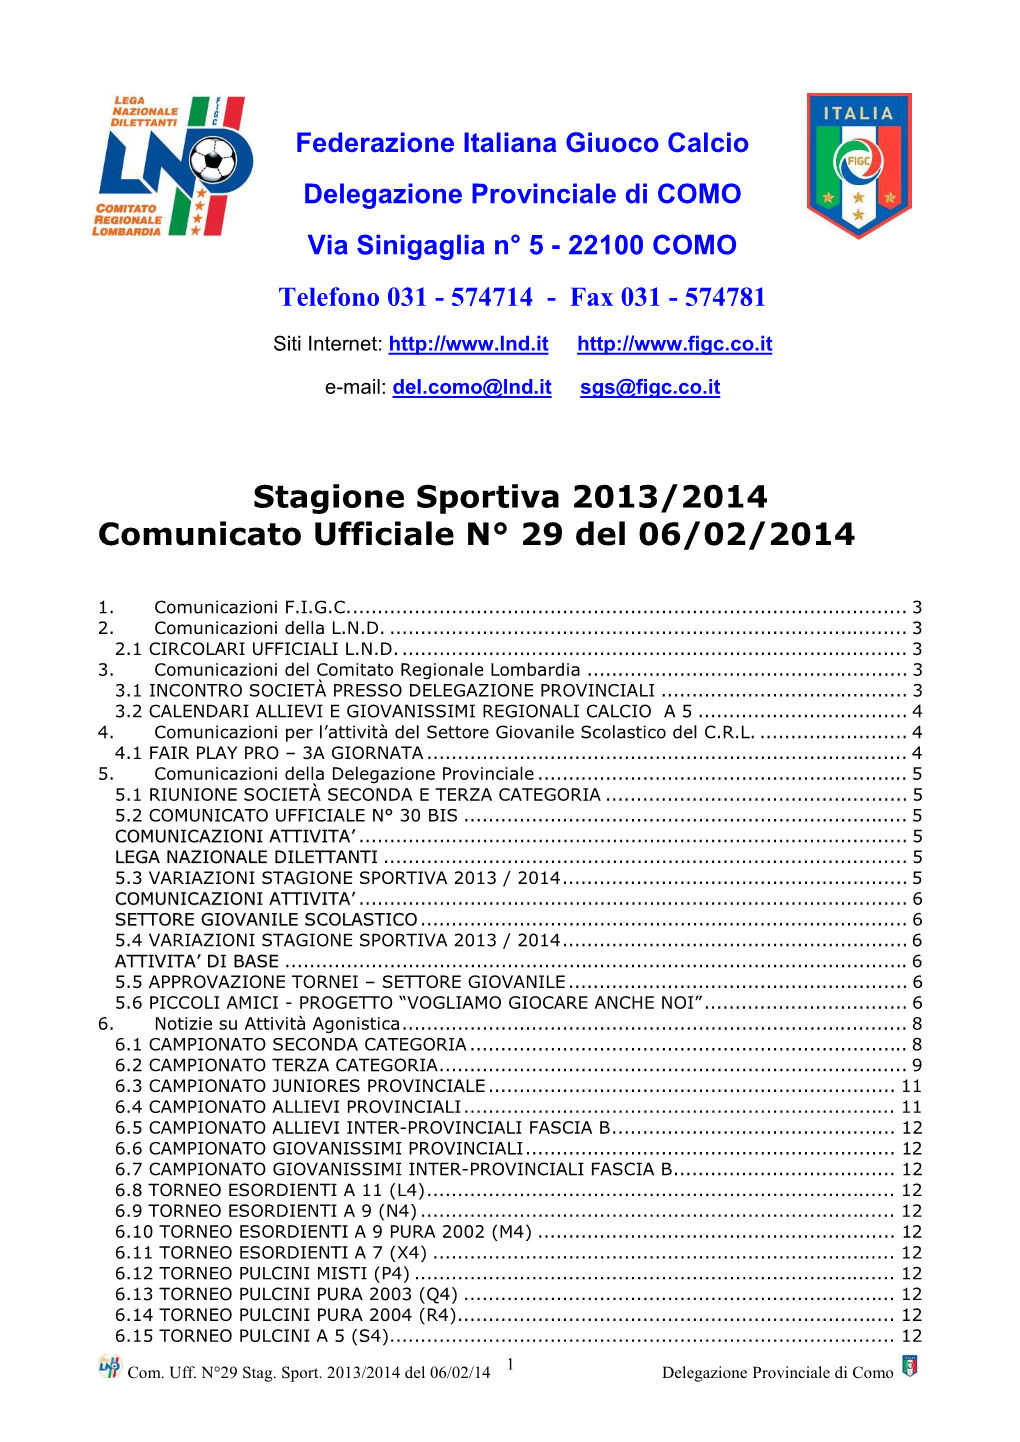 Stagione Sportiva 2013/2014 Comunicato Ufficiale N° 29 Del 06/02/2014